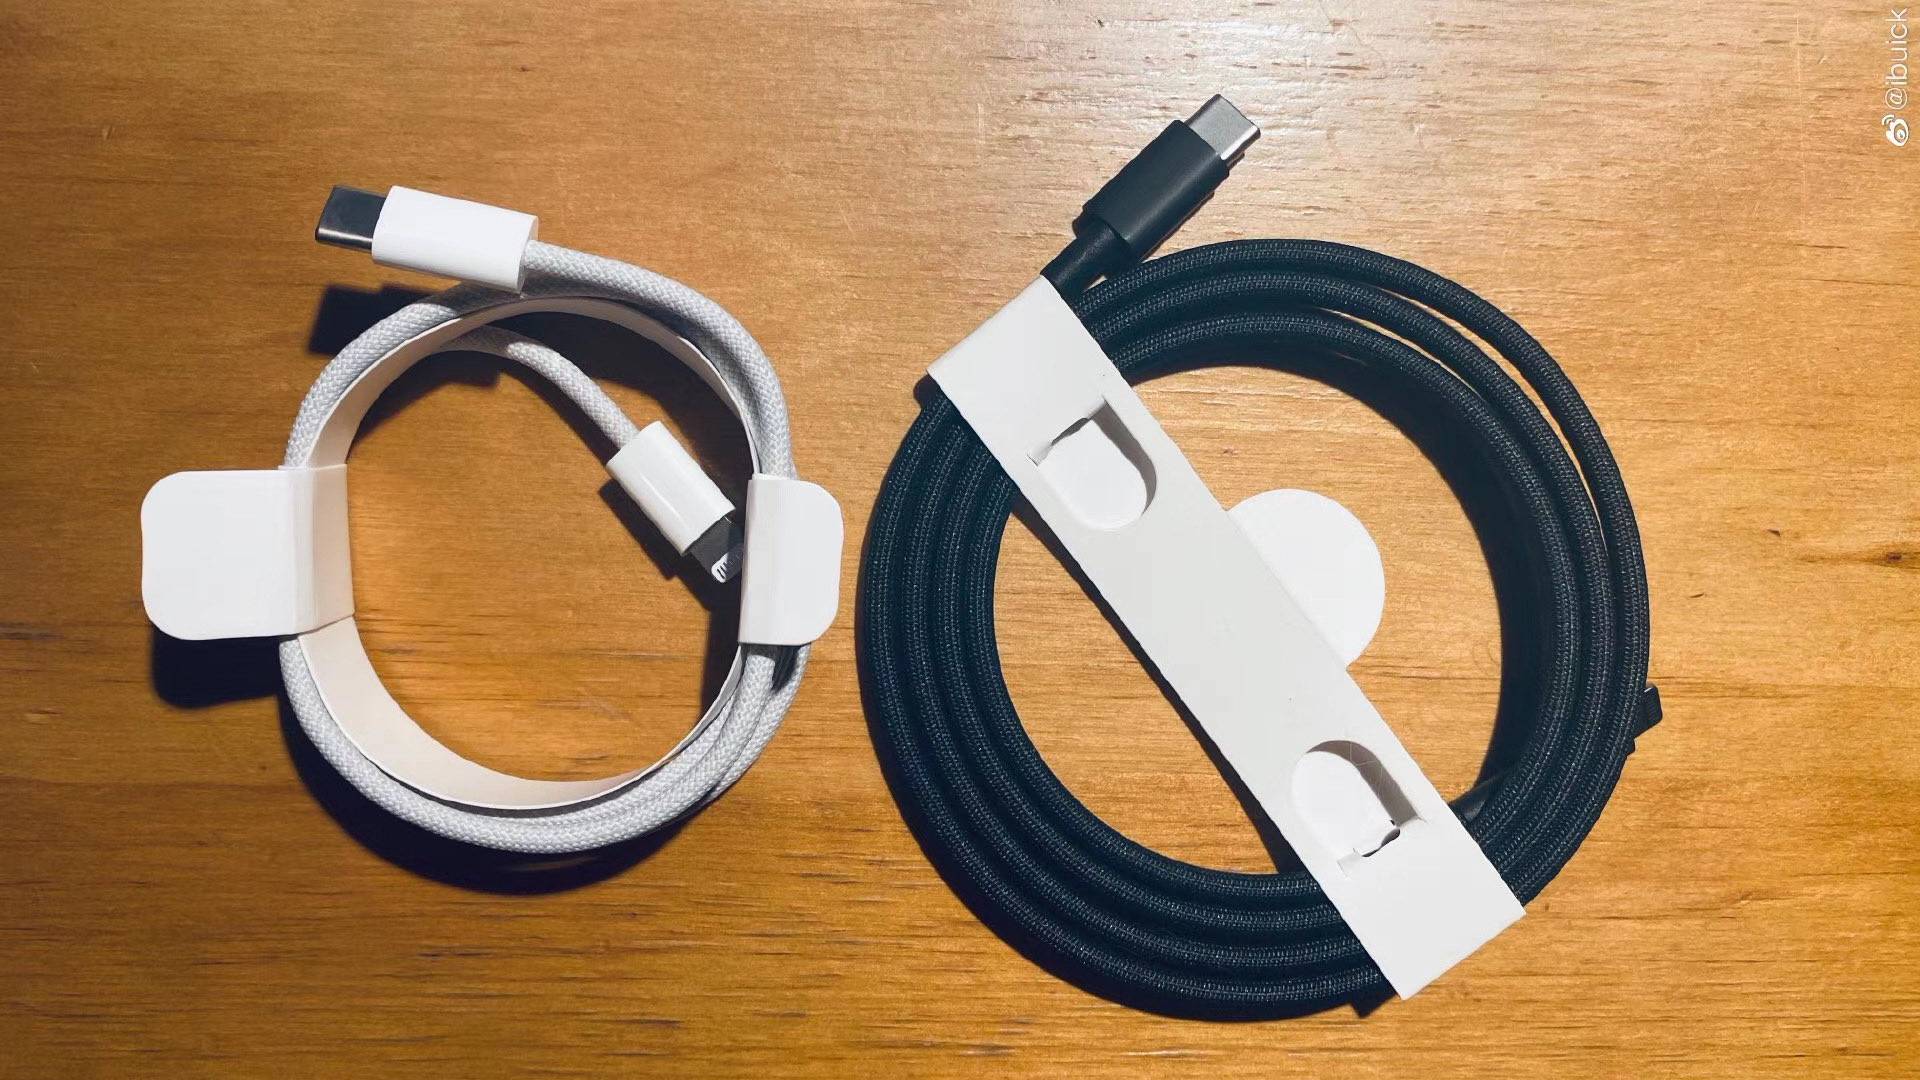 iPhone 12 SHOW USB-C cables Textile phones